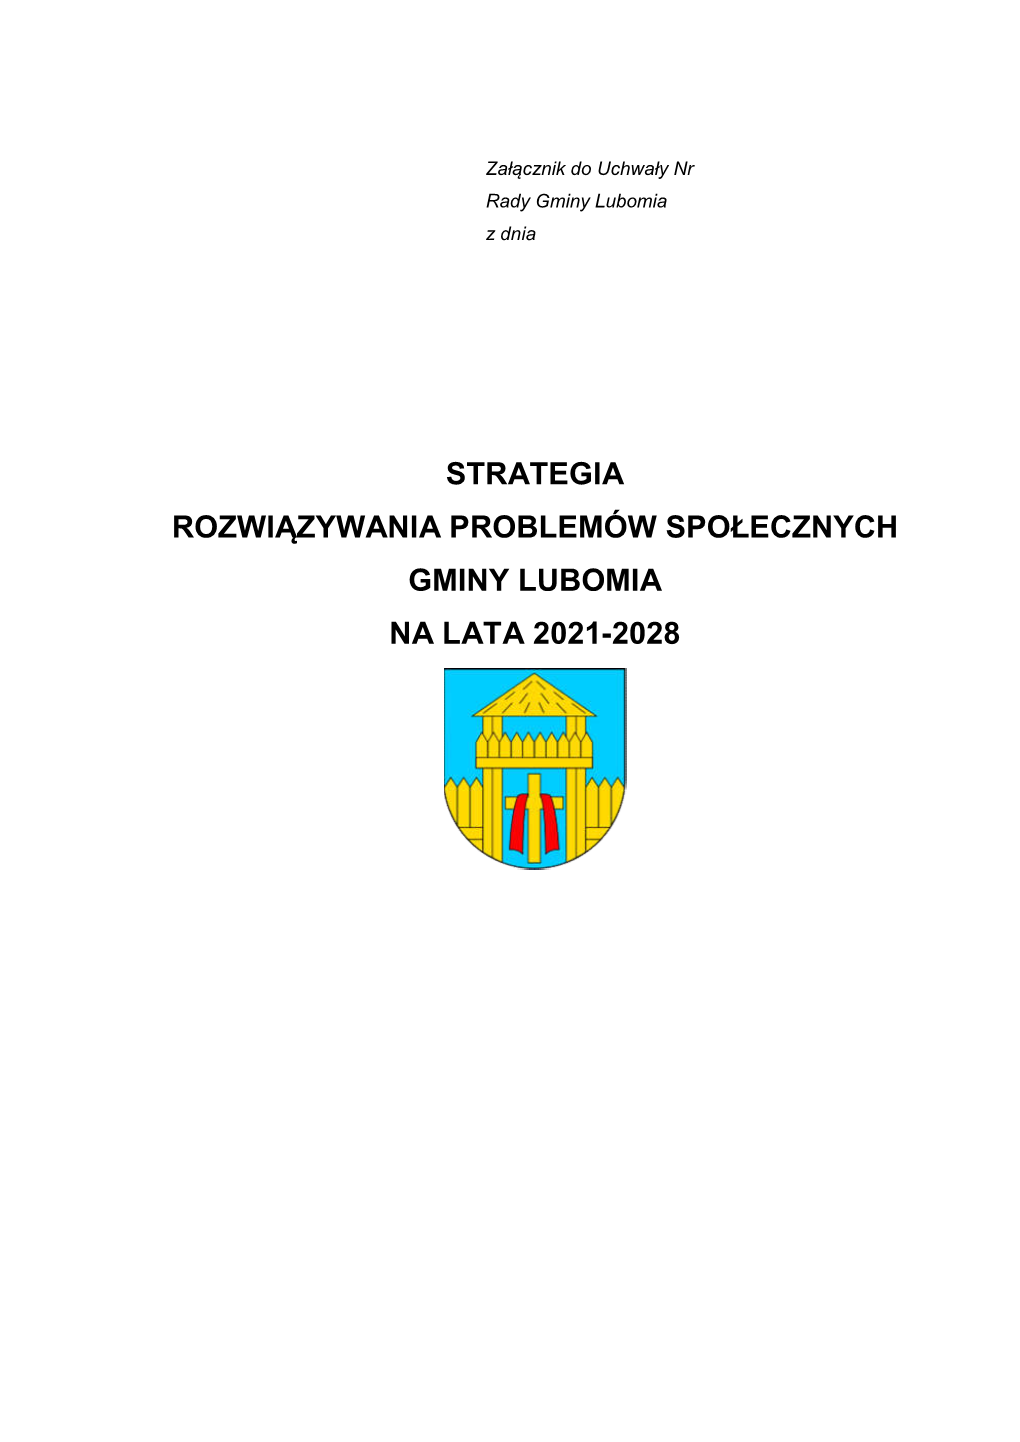 Strategia Rozwiązywania Problemów Społecznych Gminy Lubomia Na Lata 2021-2028